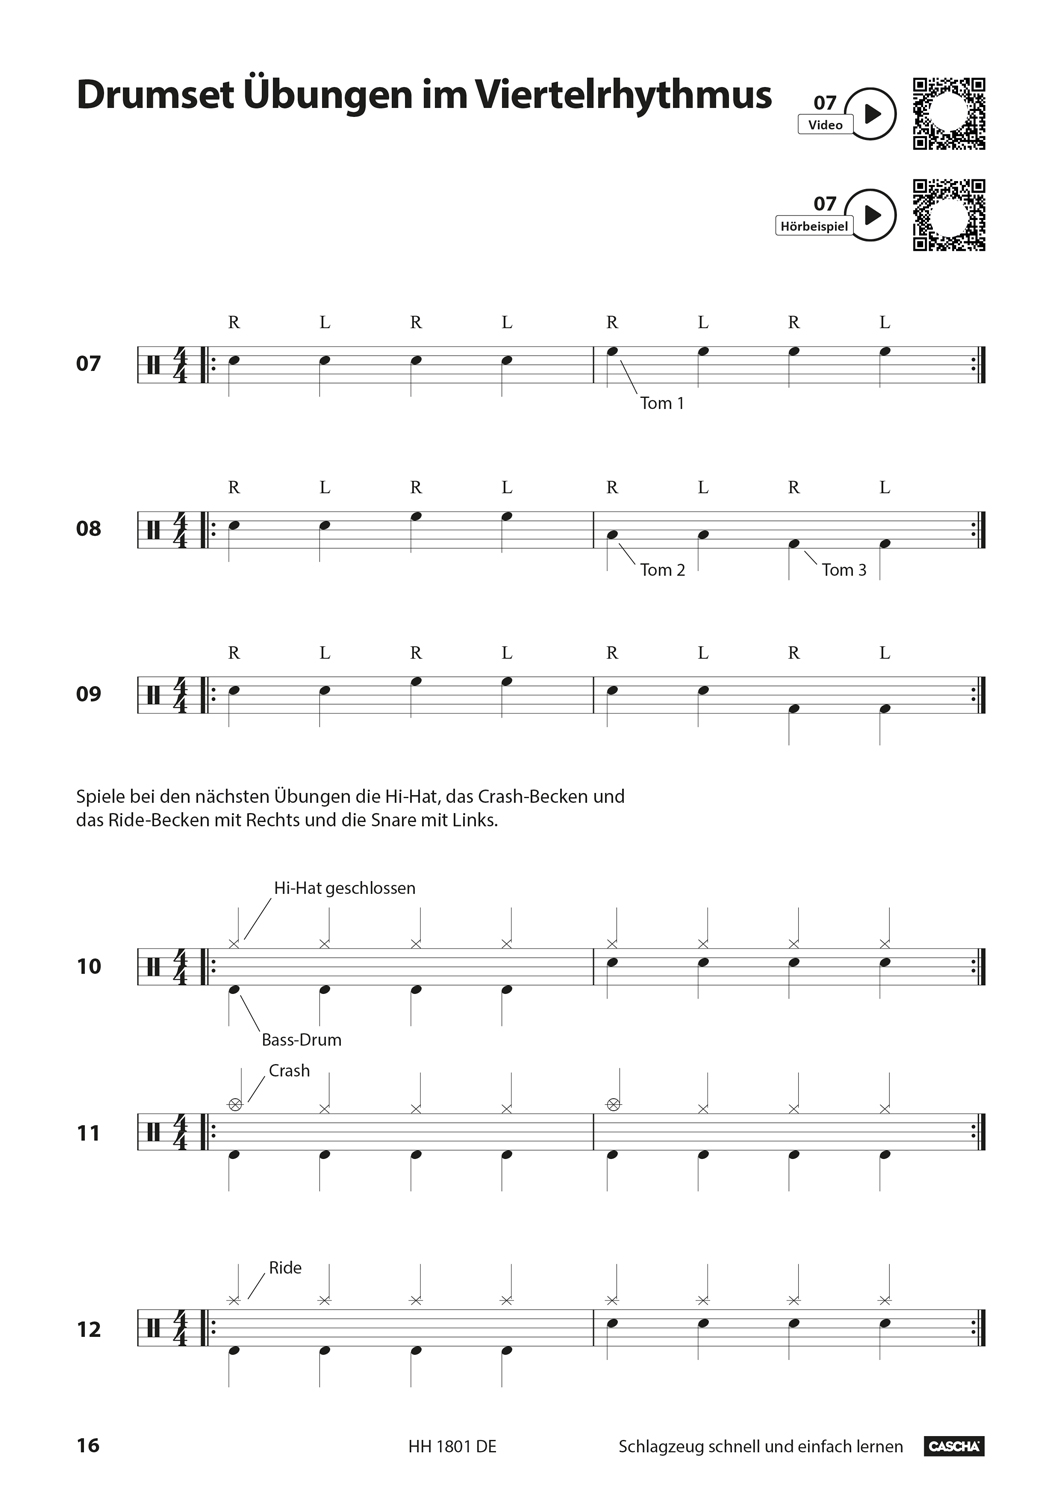 Schlagzeug - Schnell und einfach lernen Seiten 6